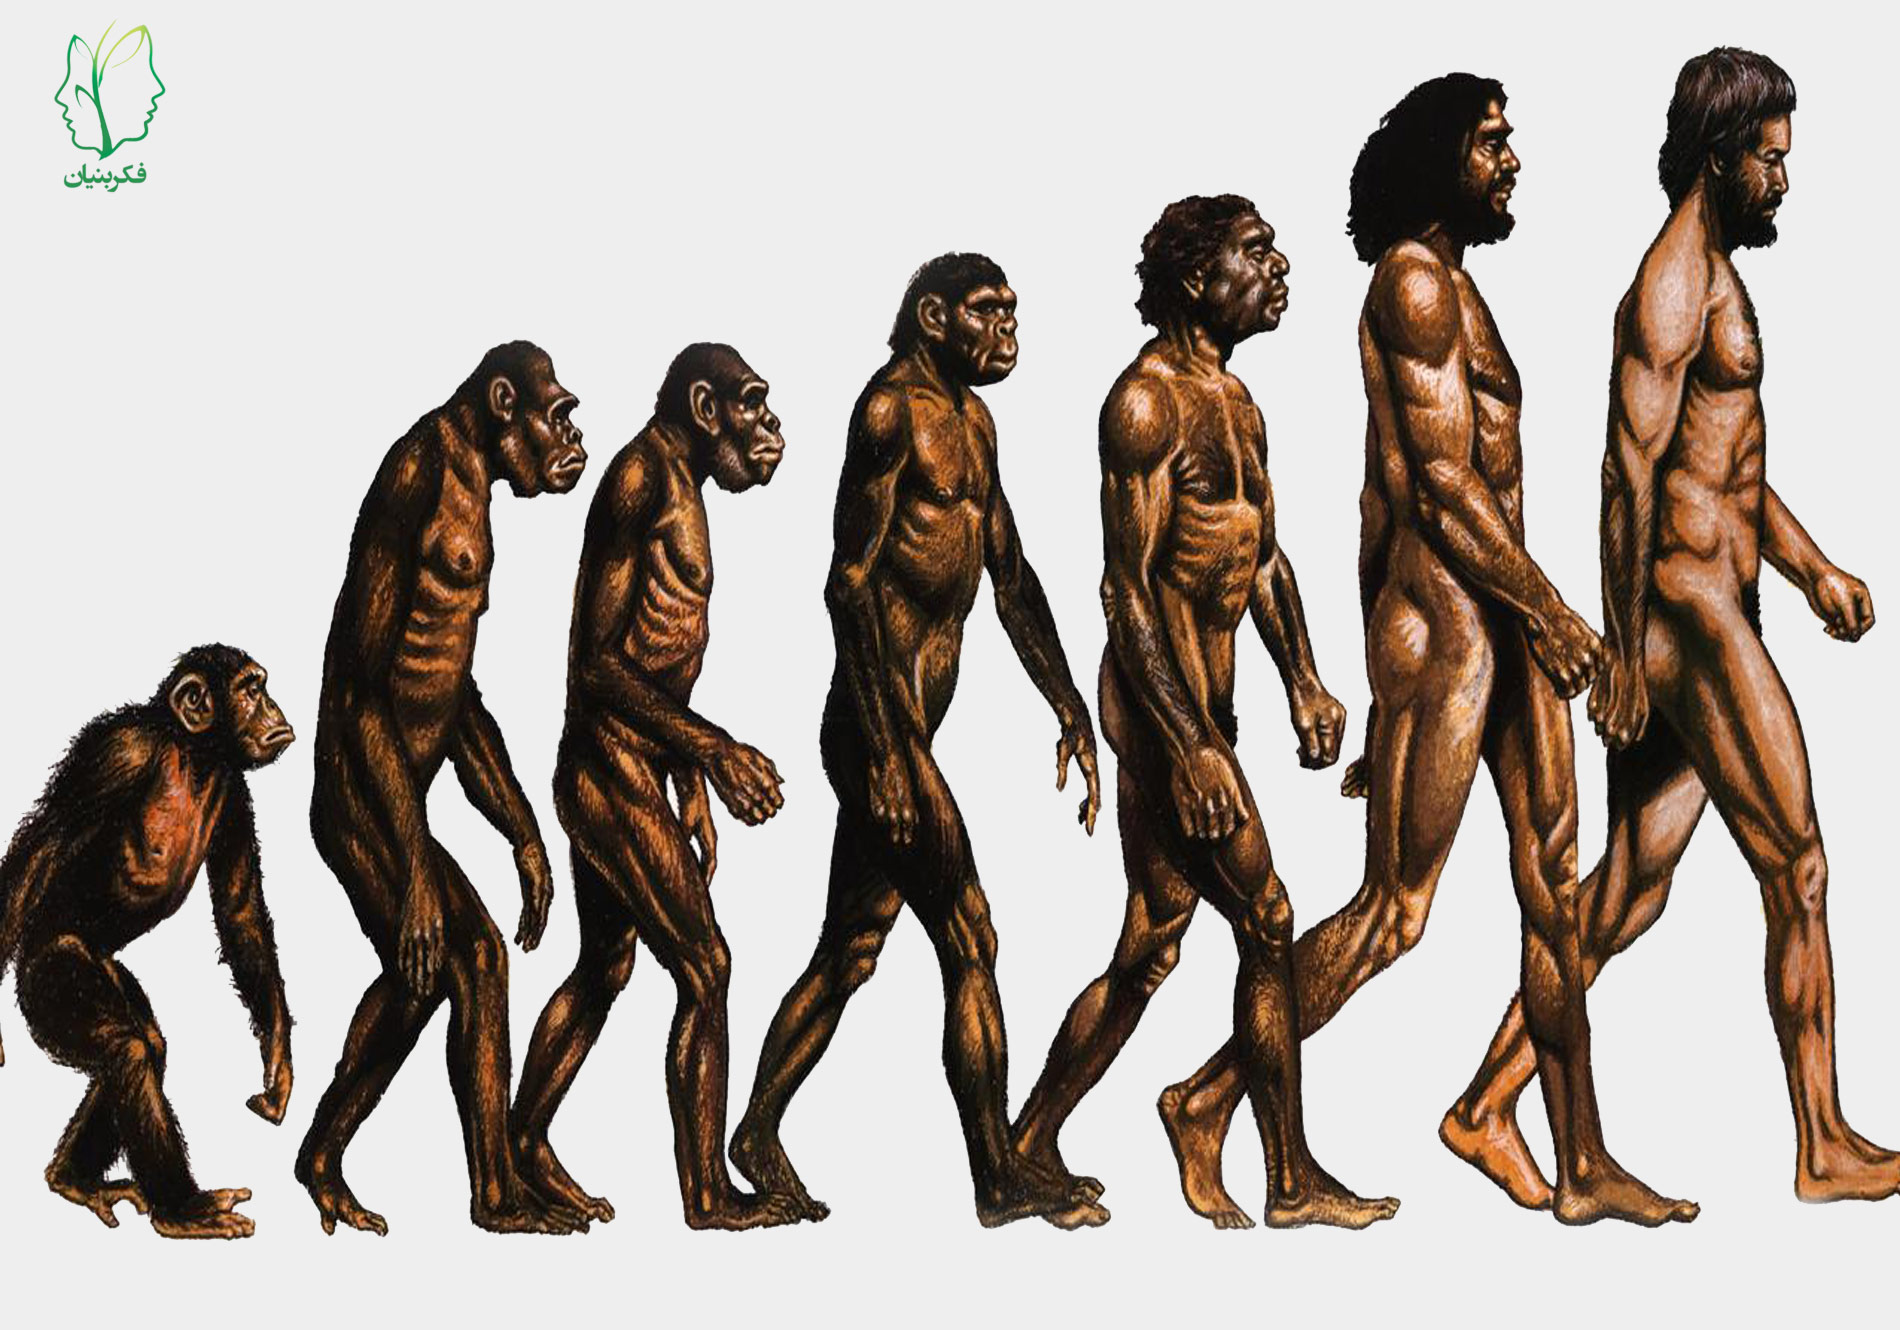 진화론은 과연 사실일까? 진화론에 가정에 대해 탐구해본다.